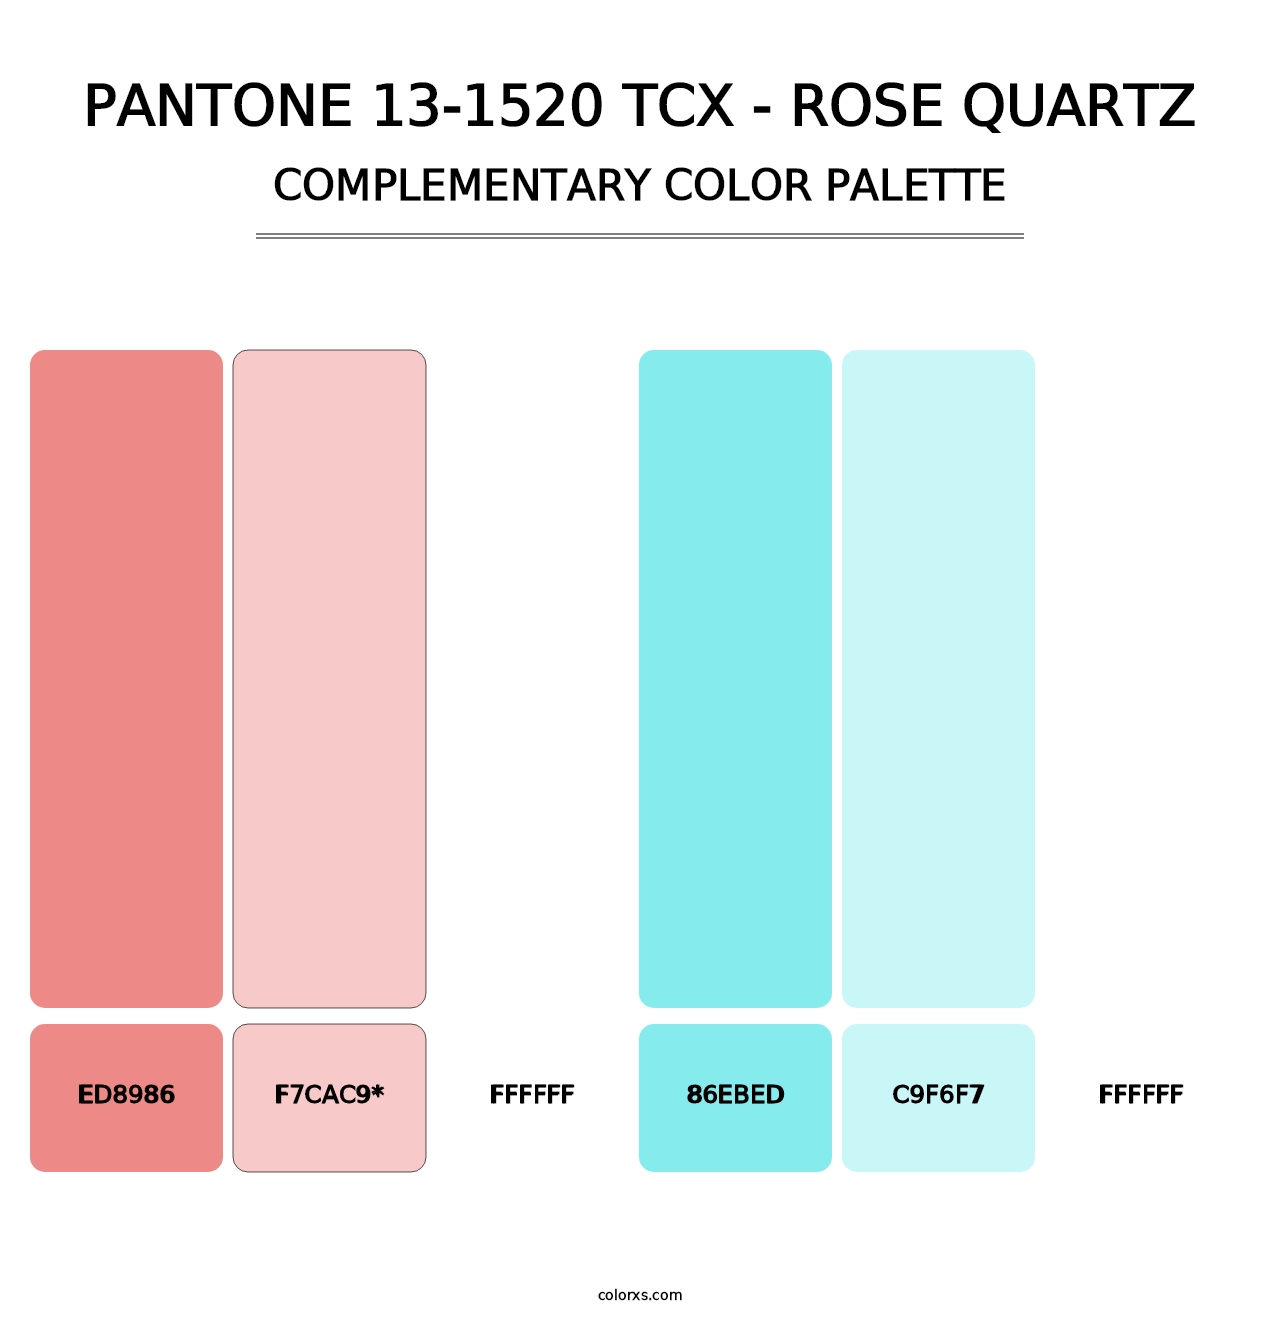 PANTONE 13-1520 TCX - Rose Quartz - Complementary Color Palette